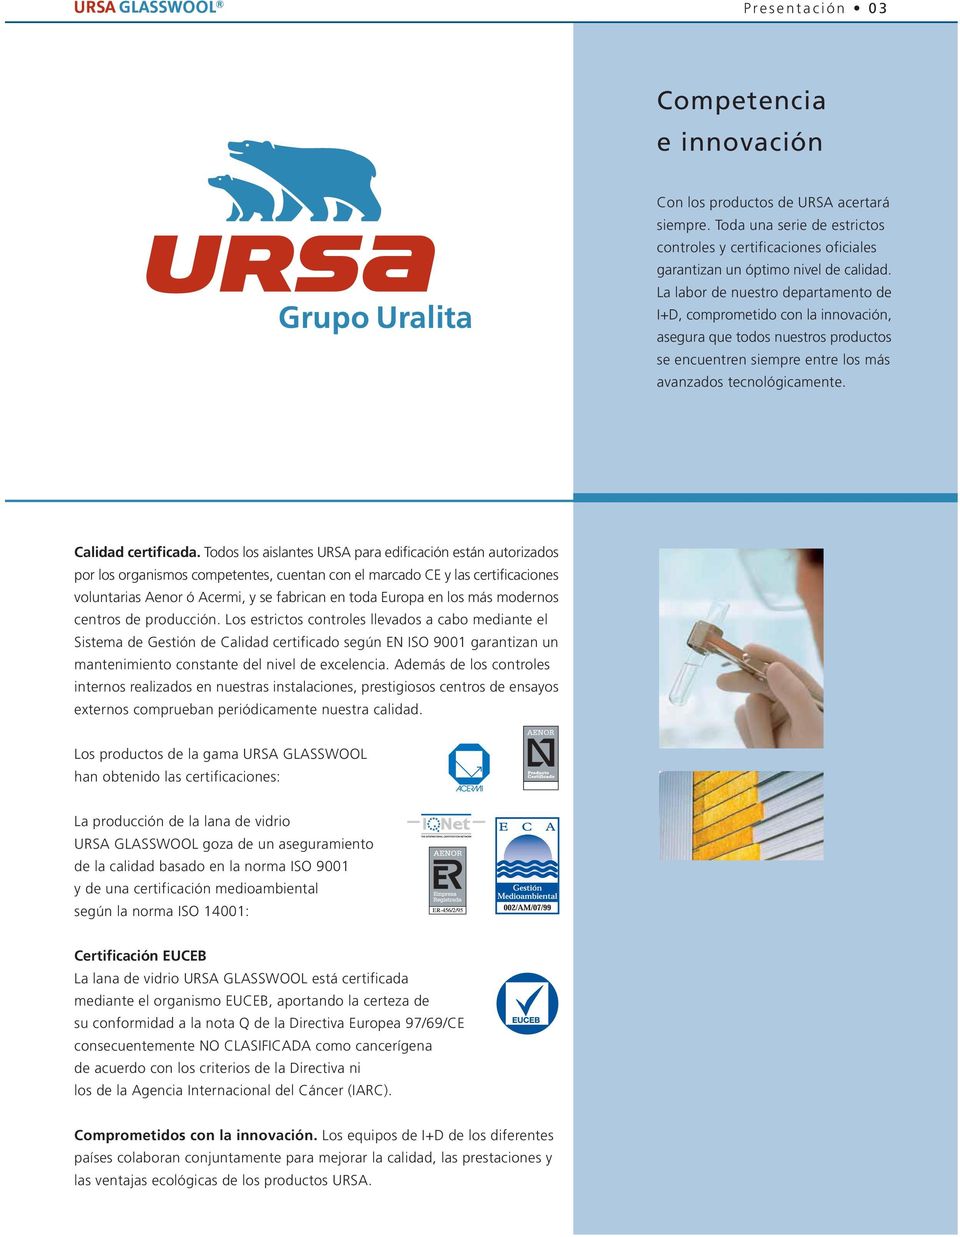 Todos los aislantes URSA para edificación están autorizados por los organismos competentes, cuentan con el marcado CE y las certificaciones voluntarias Aenor ó Acermi, y se fabrican en toda Europa en